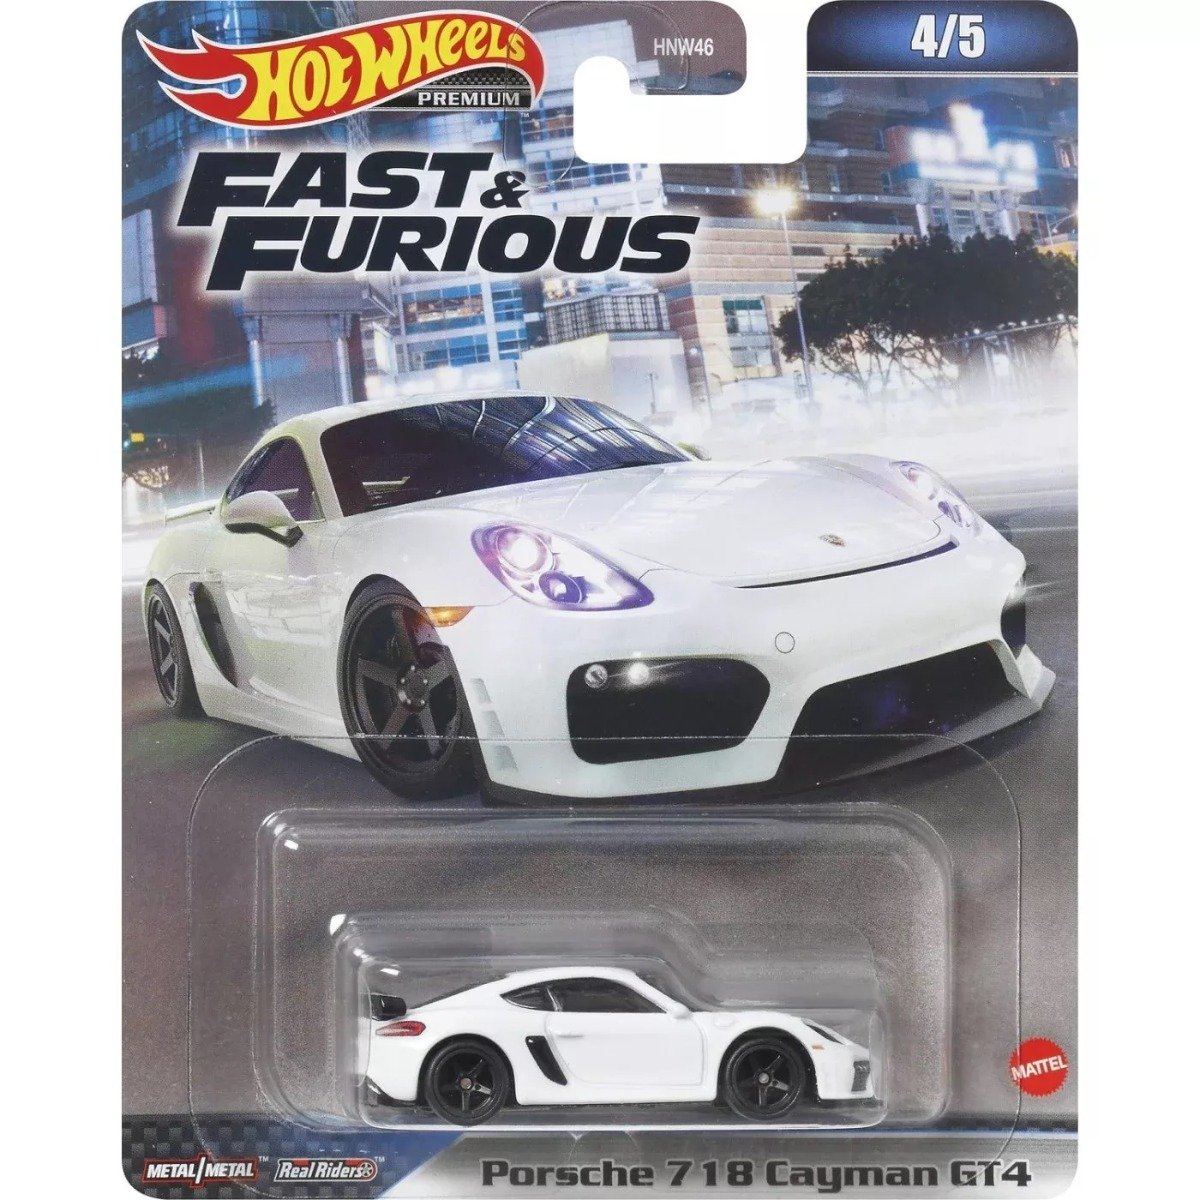 Masinuta din metal, Hot Wheels, Fast and Furious, Porsche Cayman Gt4, 1:64, HKD20